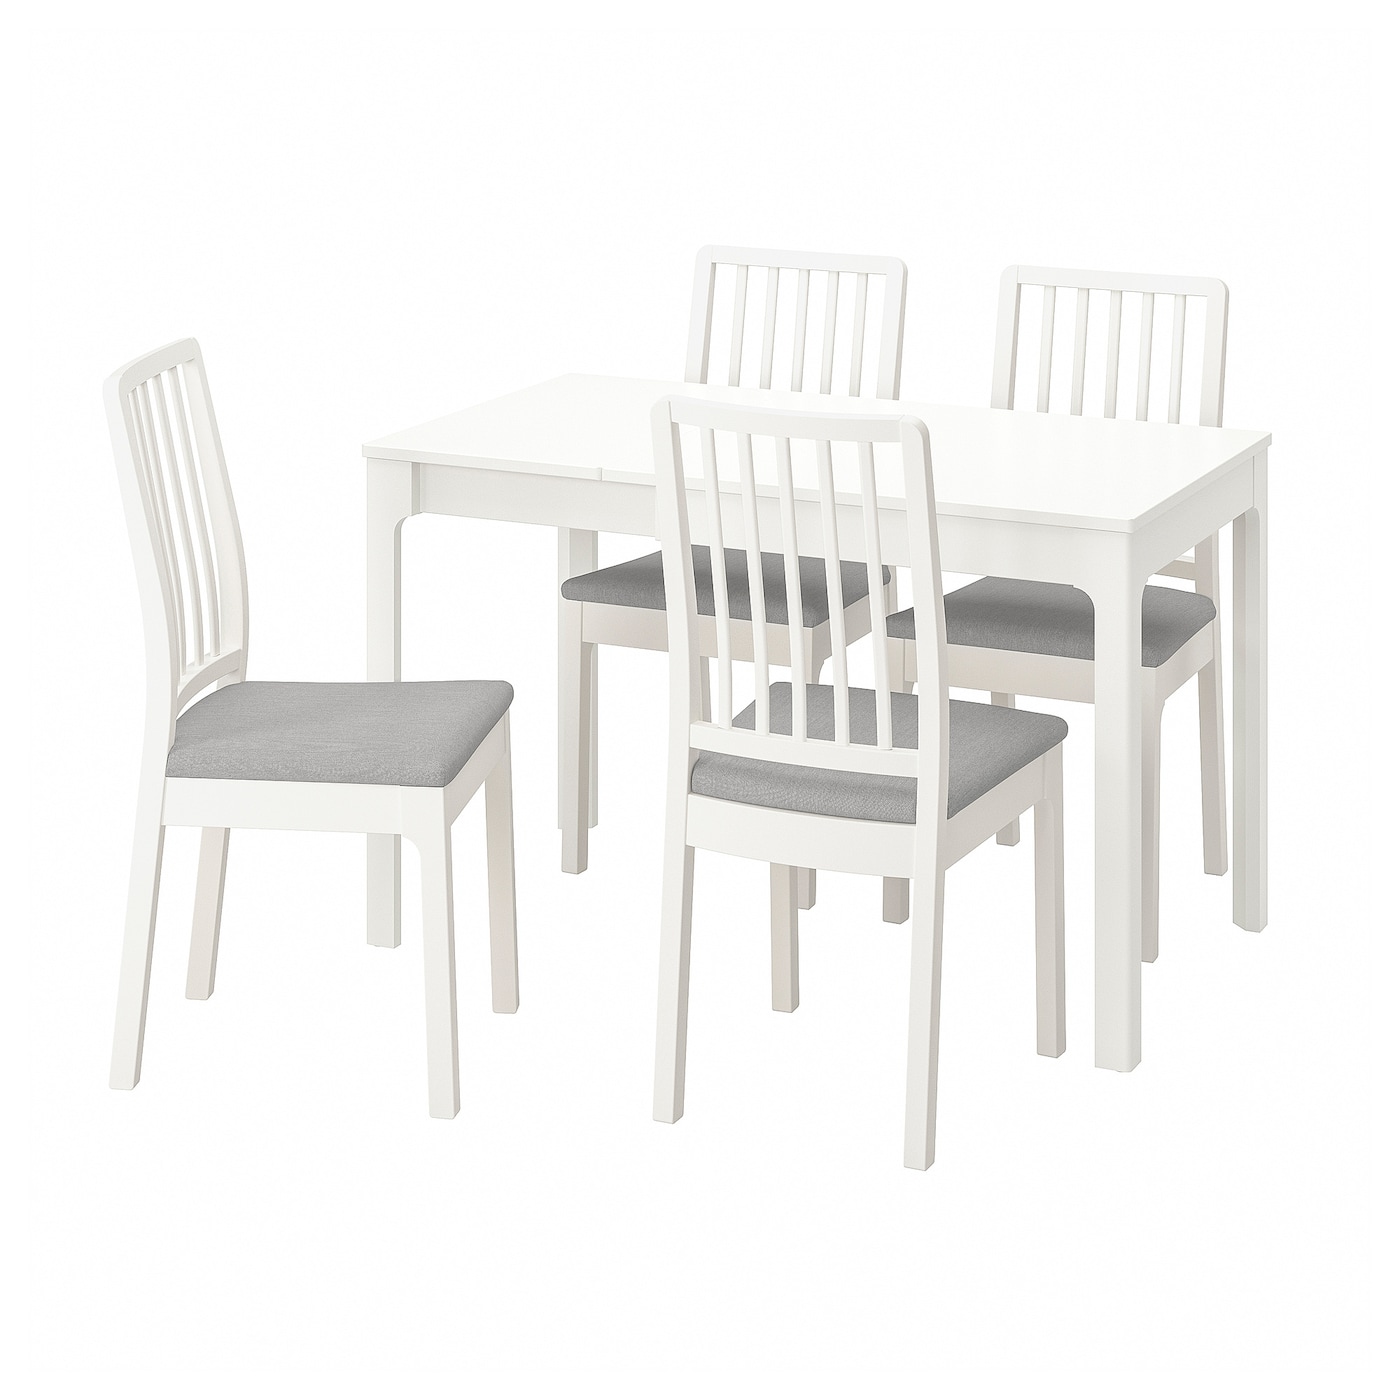 Стол и 4 стула - EKEDALEN / EKEDALEN IKEA/ ЭКЕДАЛЕН ИКЕА, 180/120 см, белый